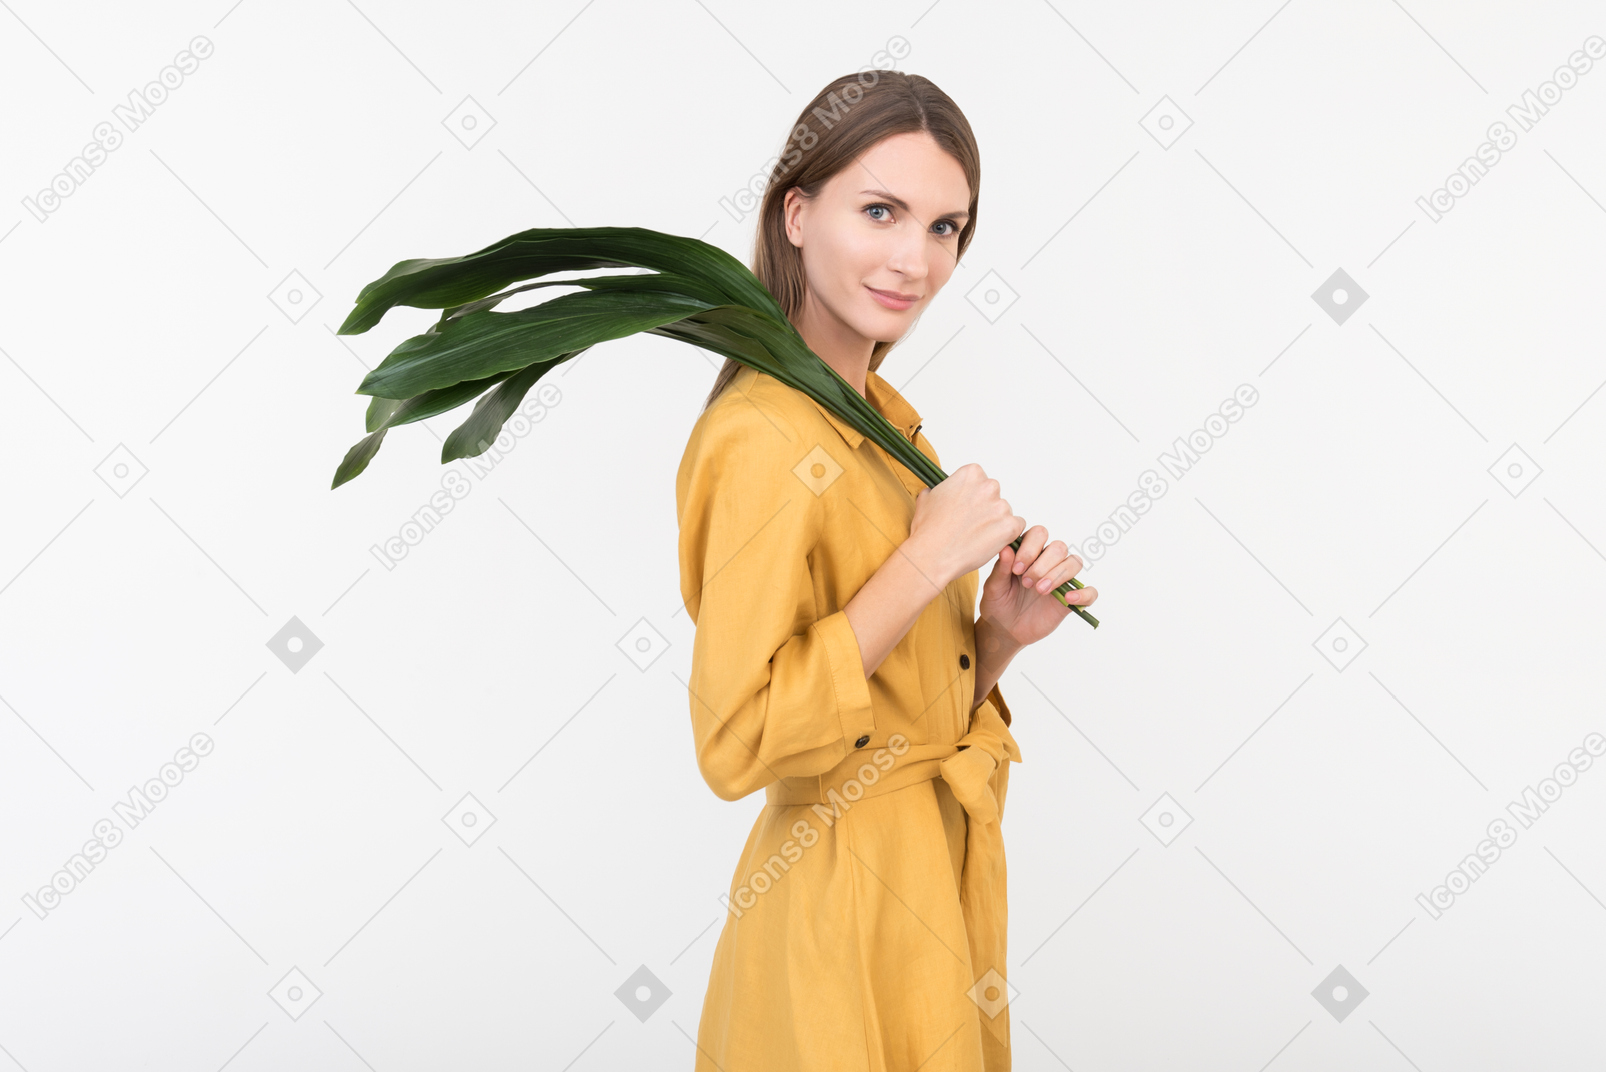 Jeune femme debout dans le profil et tenant une branche verte sur son épaule